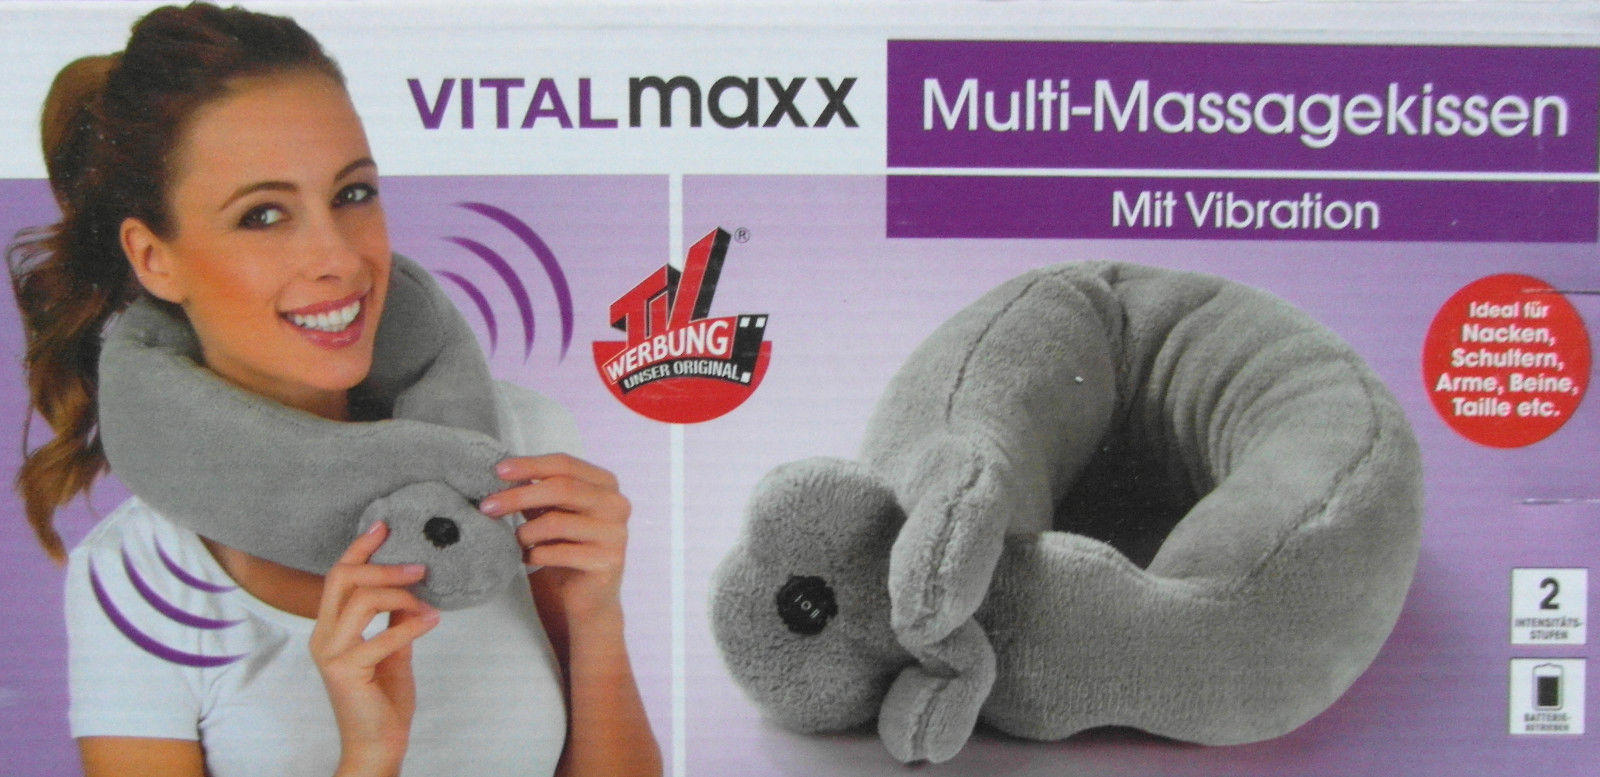 VITALmaxx Massagekissen Nacken 3V